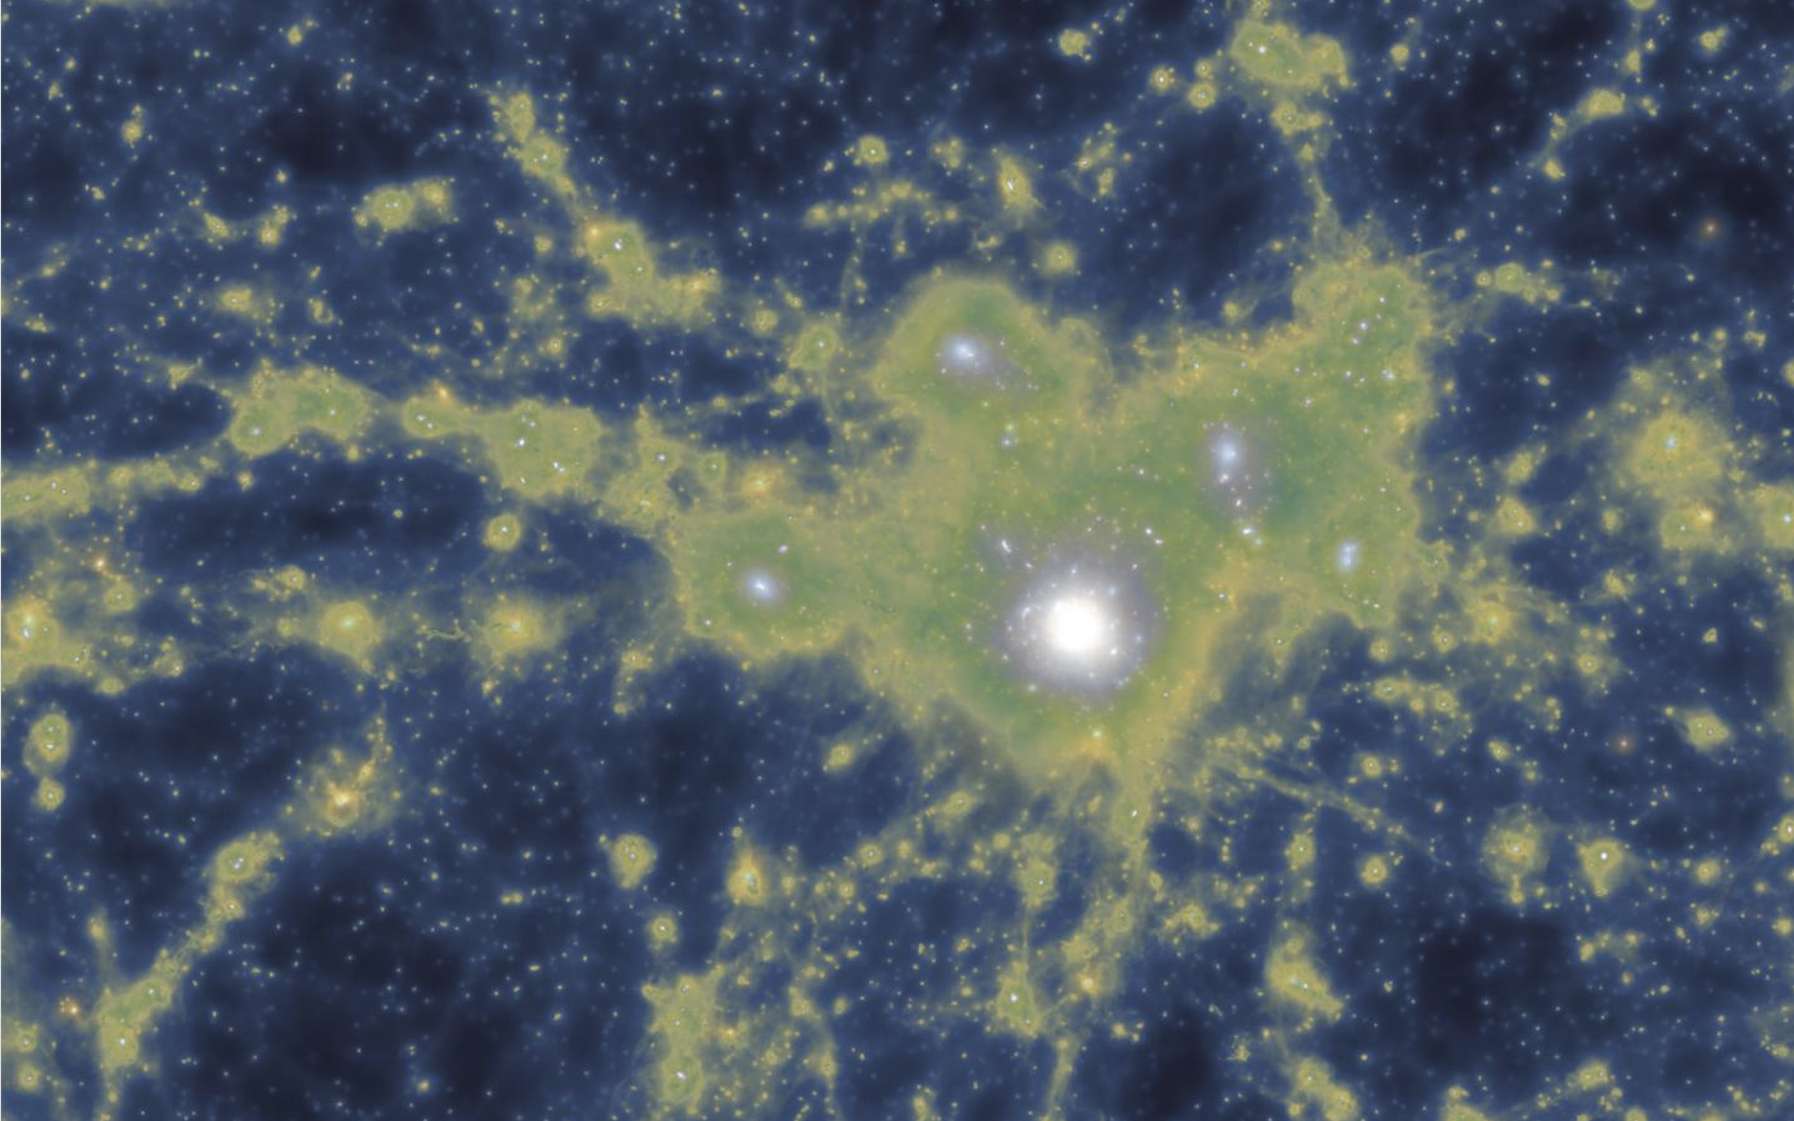 Simulation montrant la distribution de la densité de matière noire superposée à la densité de gaz. Cette image montre les canaux de gaz reliant la galaxie centrale à ses voisines. © Gupta et al, Astro 3D, Illustris TNG collaboration